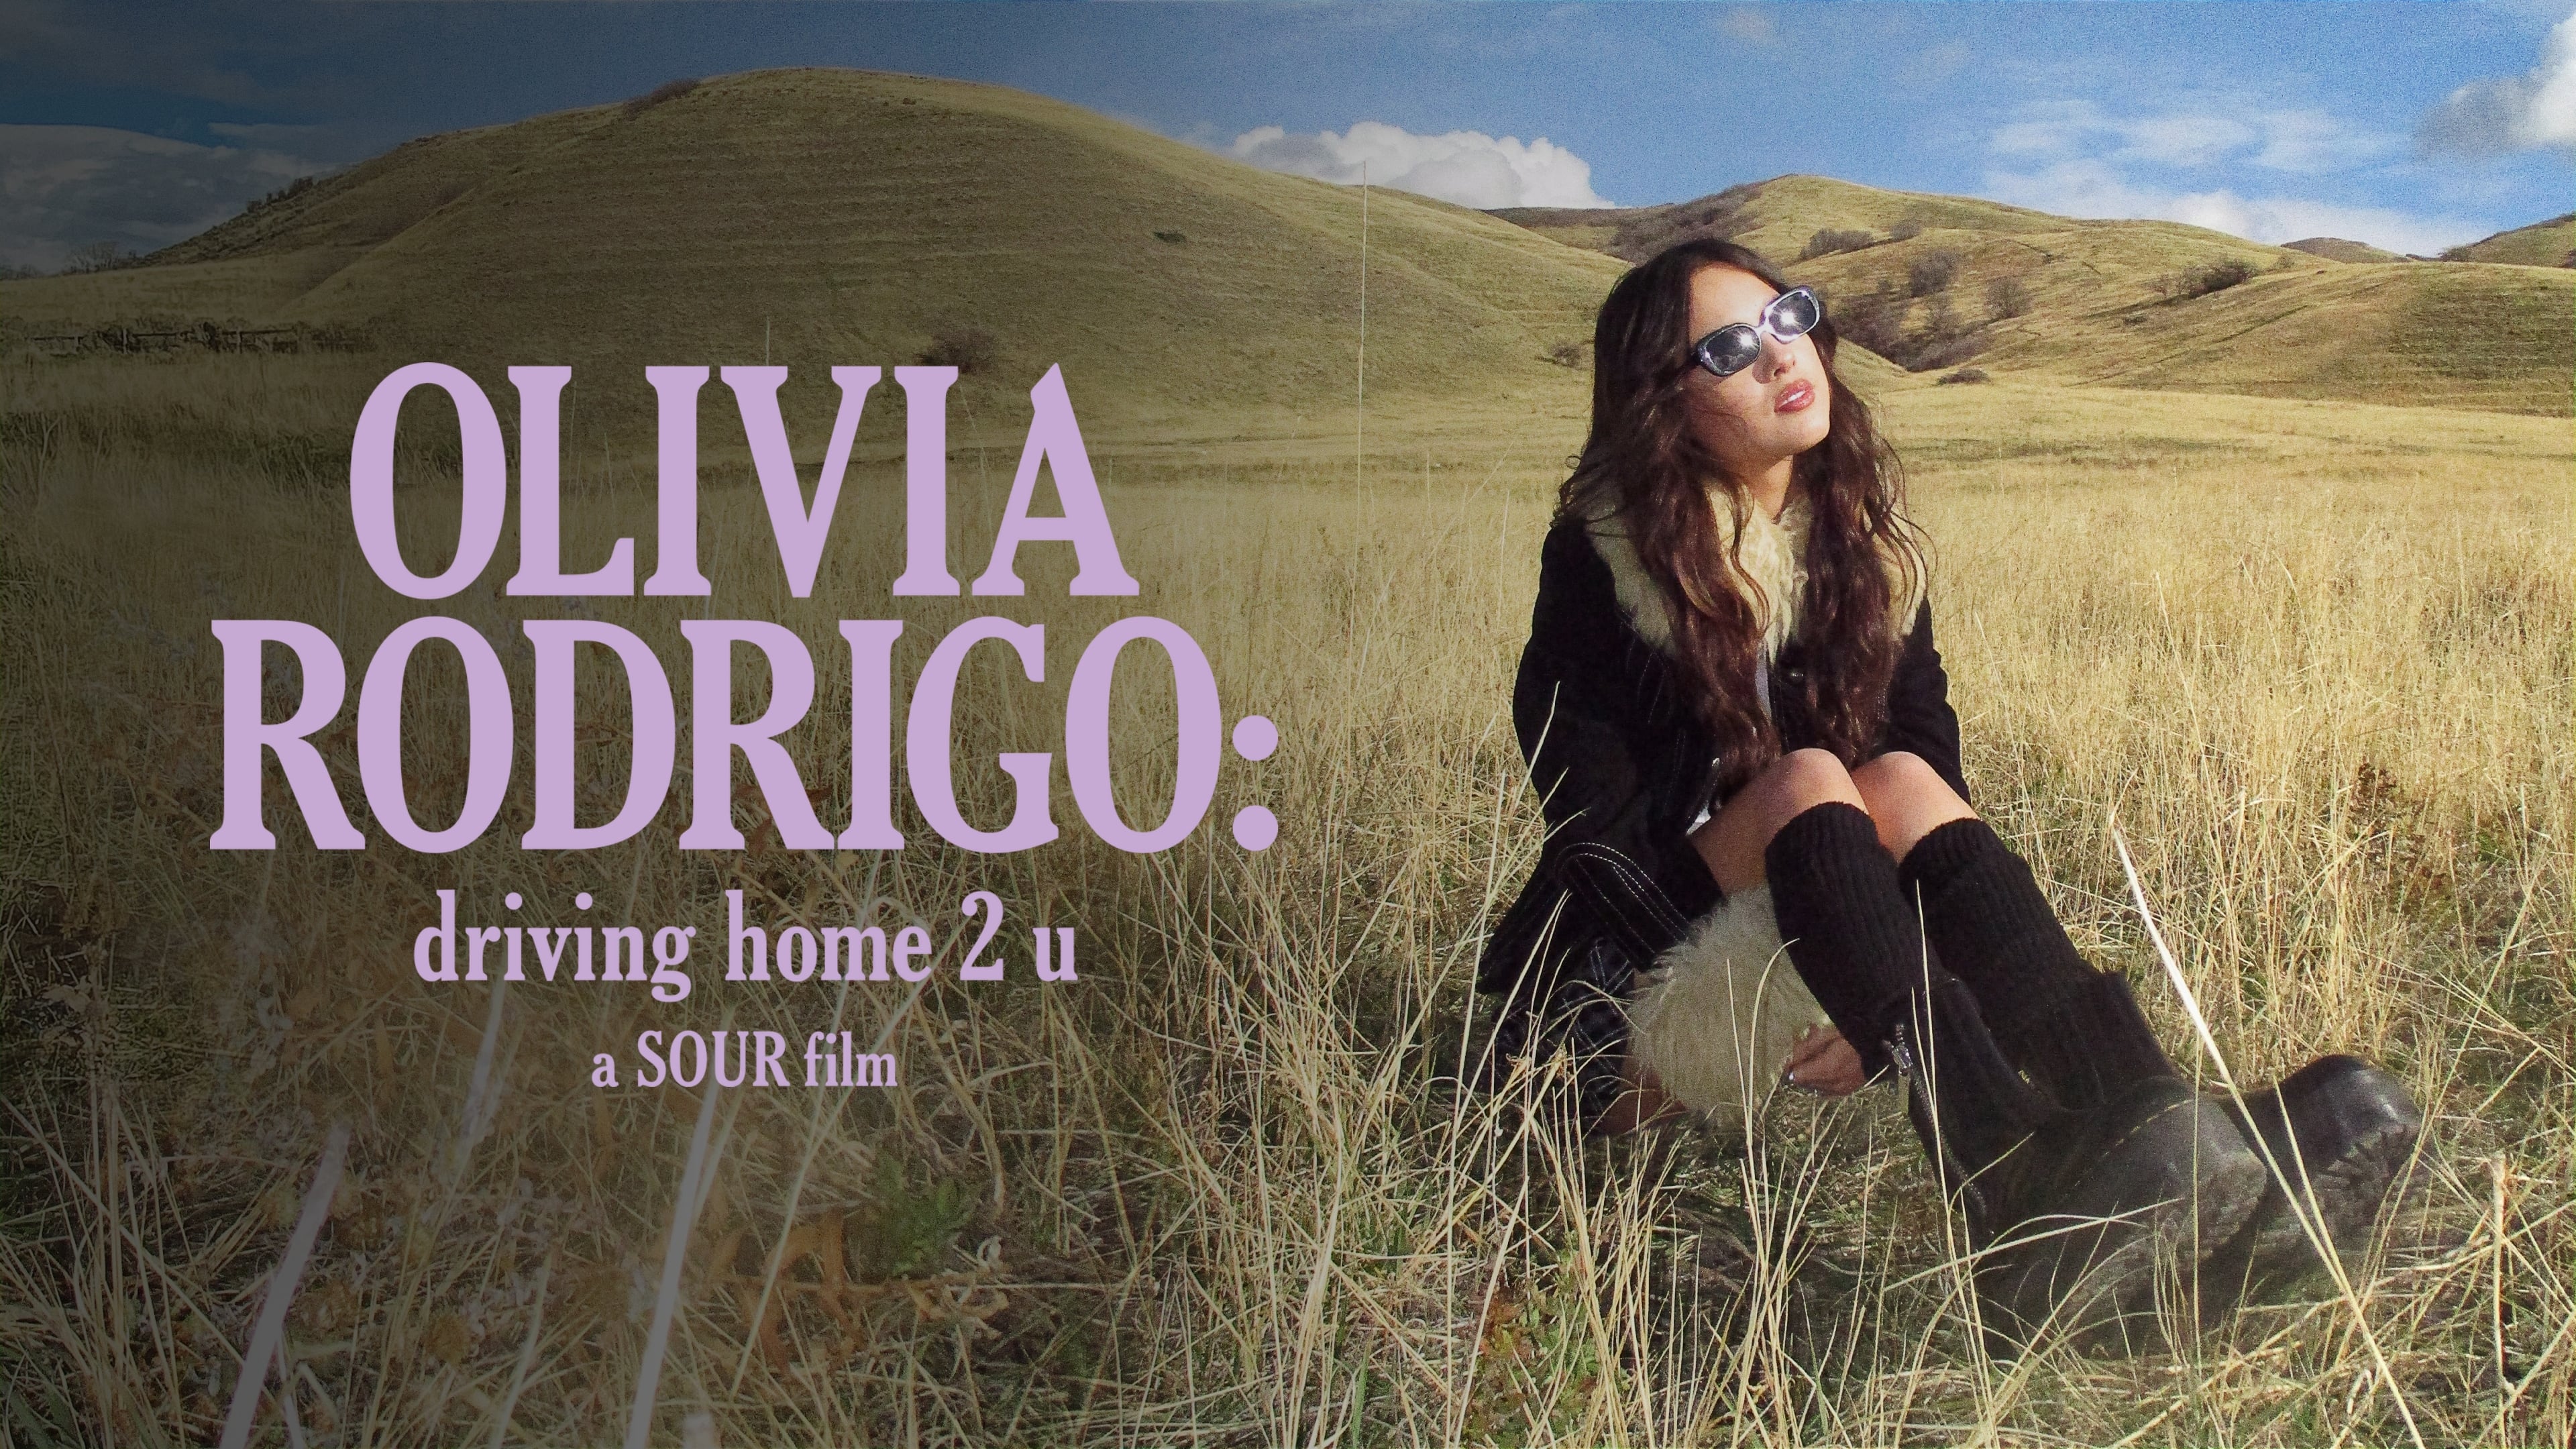 OLIVIA RODRIGO: driving home 2 u (a SOUR film) (2022)